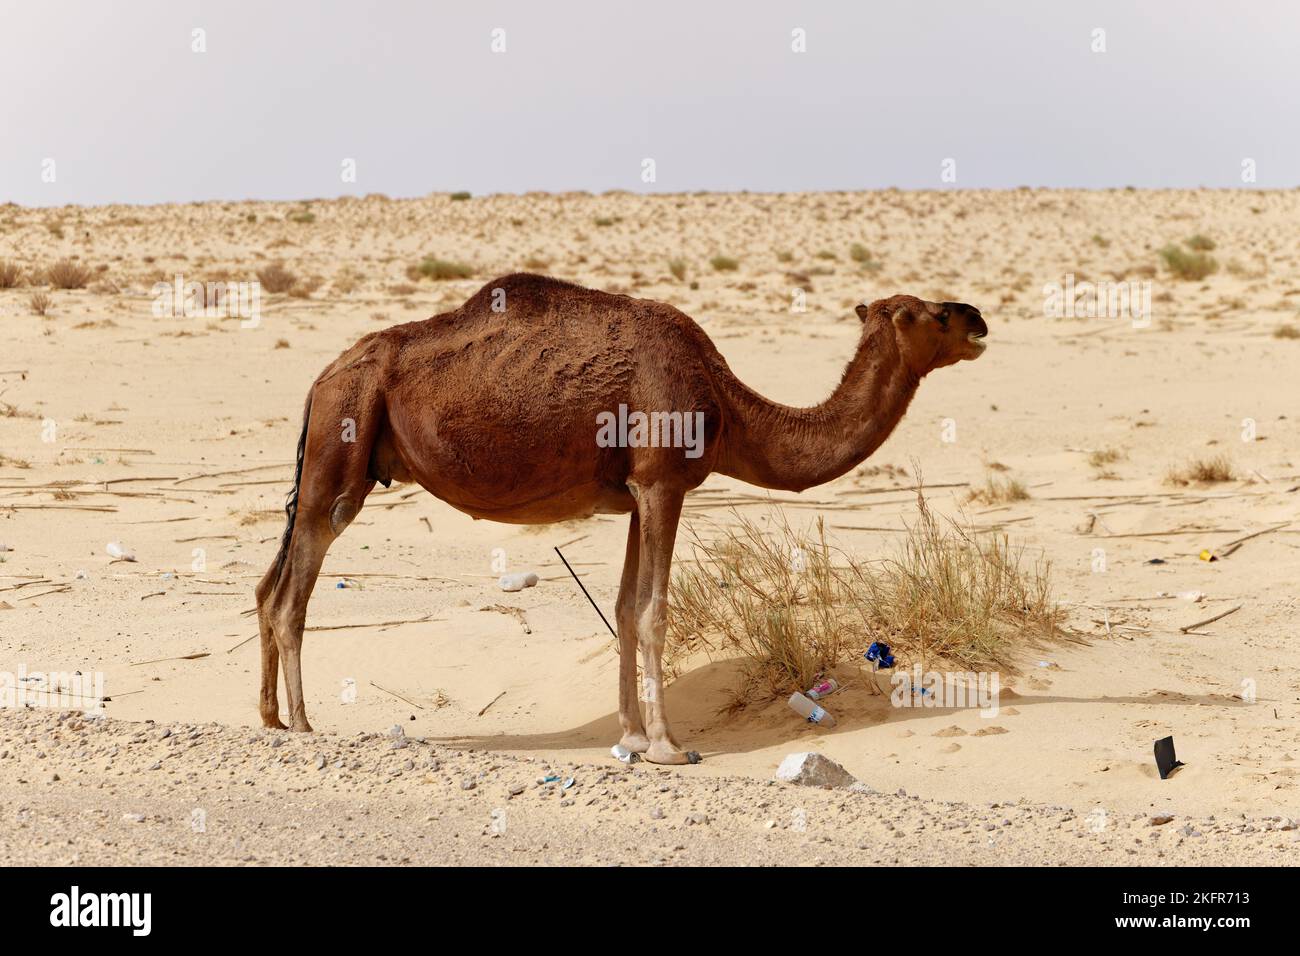 Einsames Kamel in der Wüste. Wilde Tiere in ihrem natürlichen Lebensraum. Wildnis und Dürre Landschaften. Reise- und Tourismusziel in der Wüste. Stockfoto